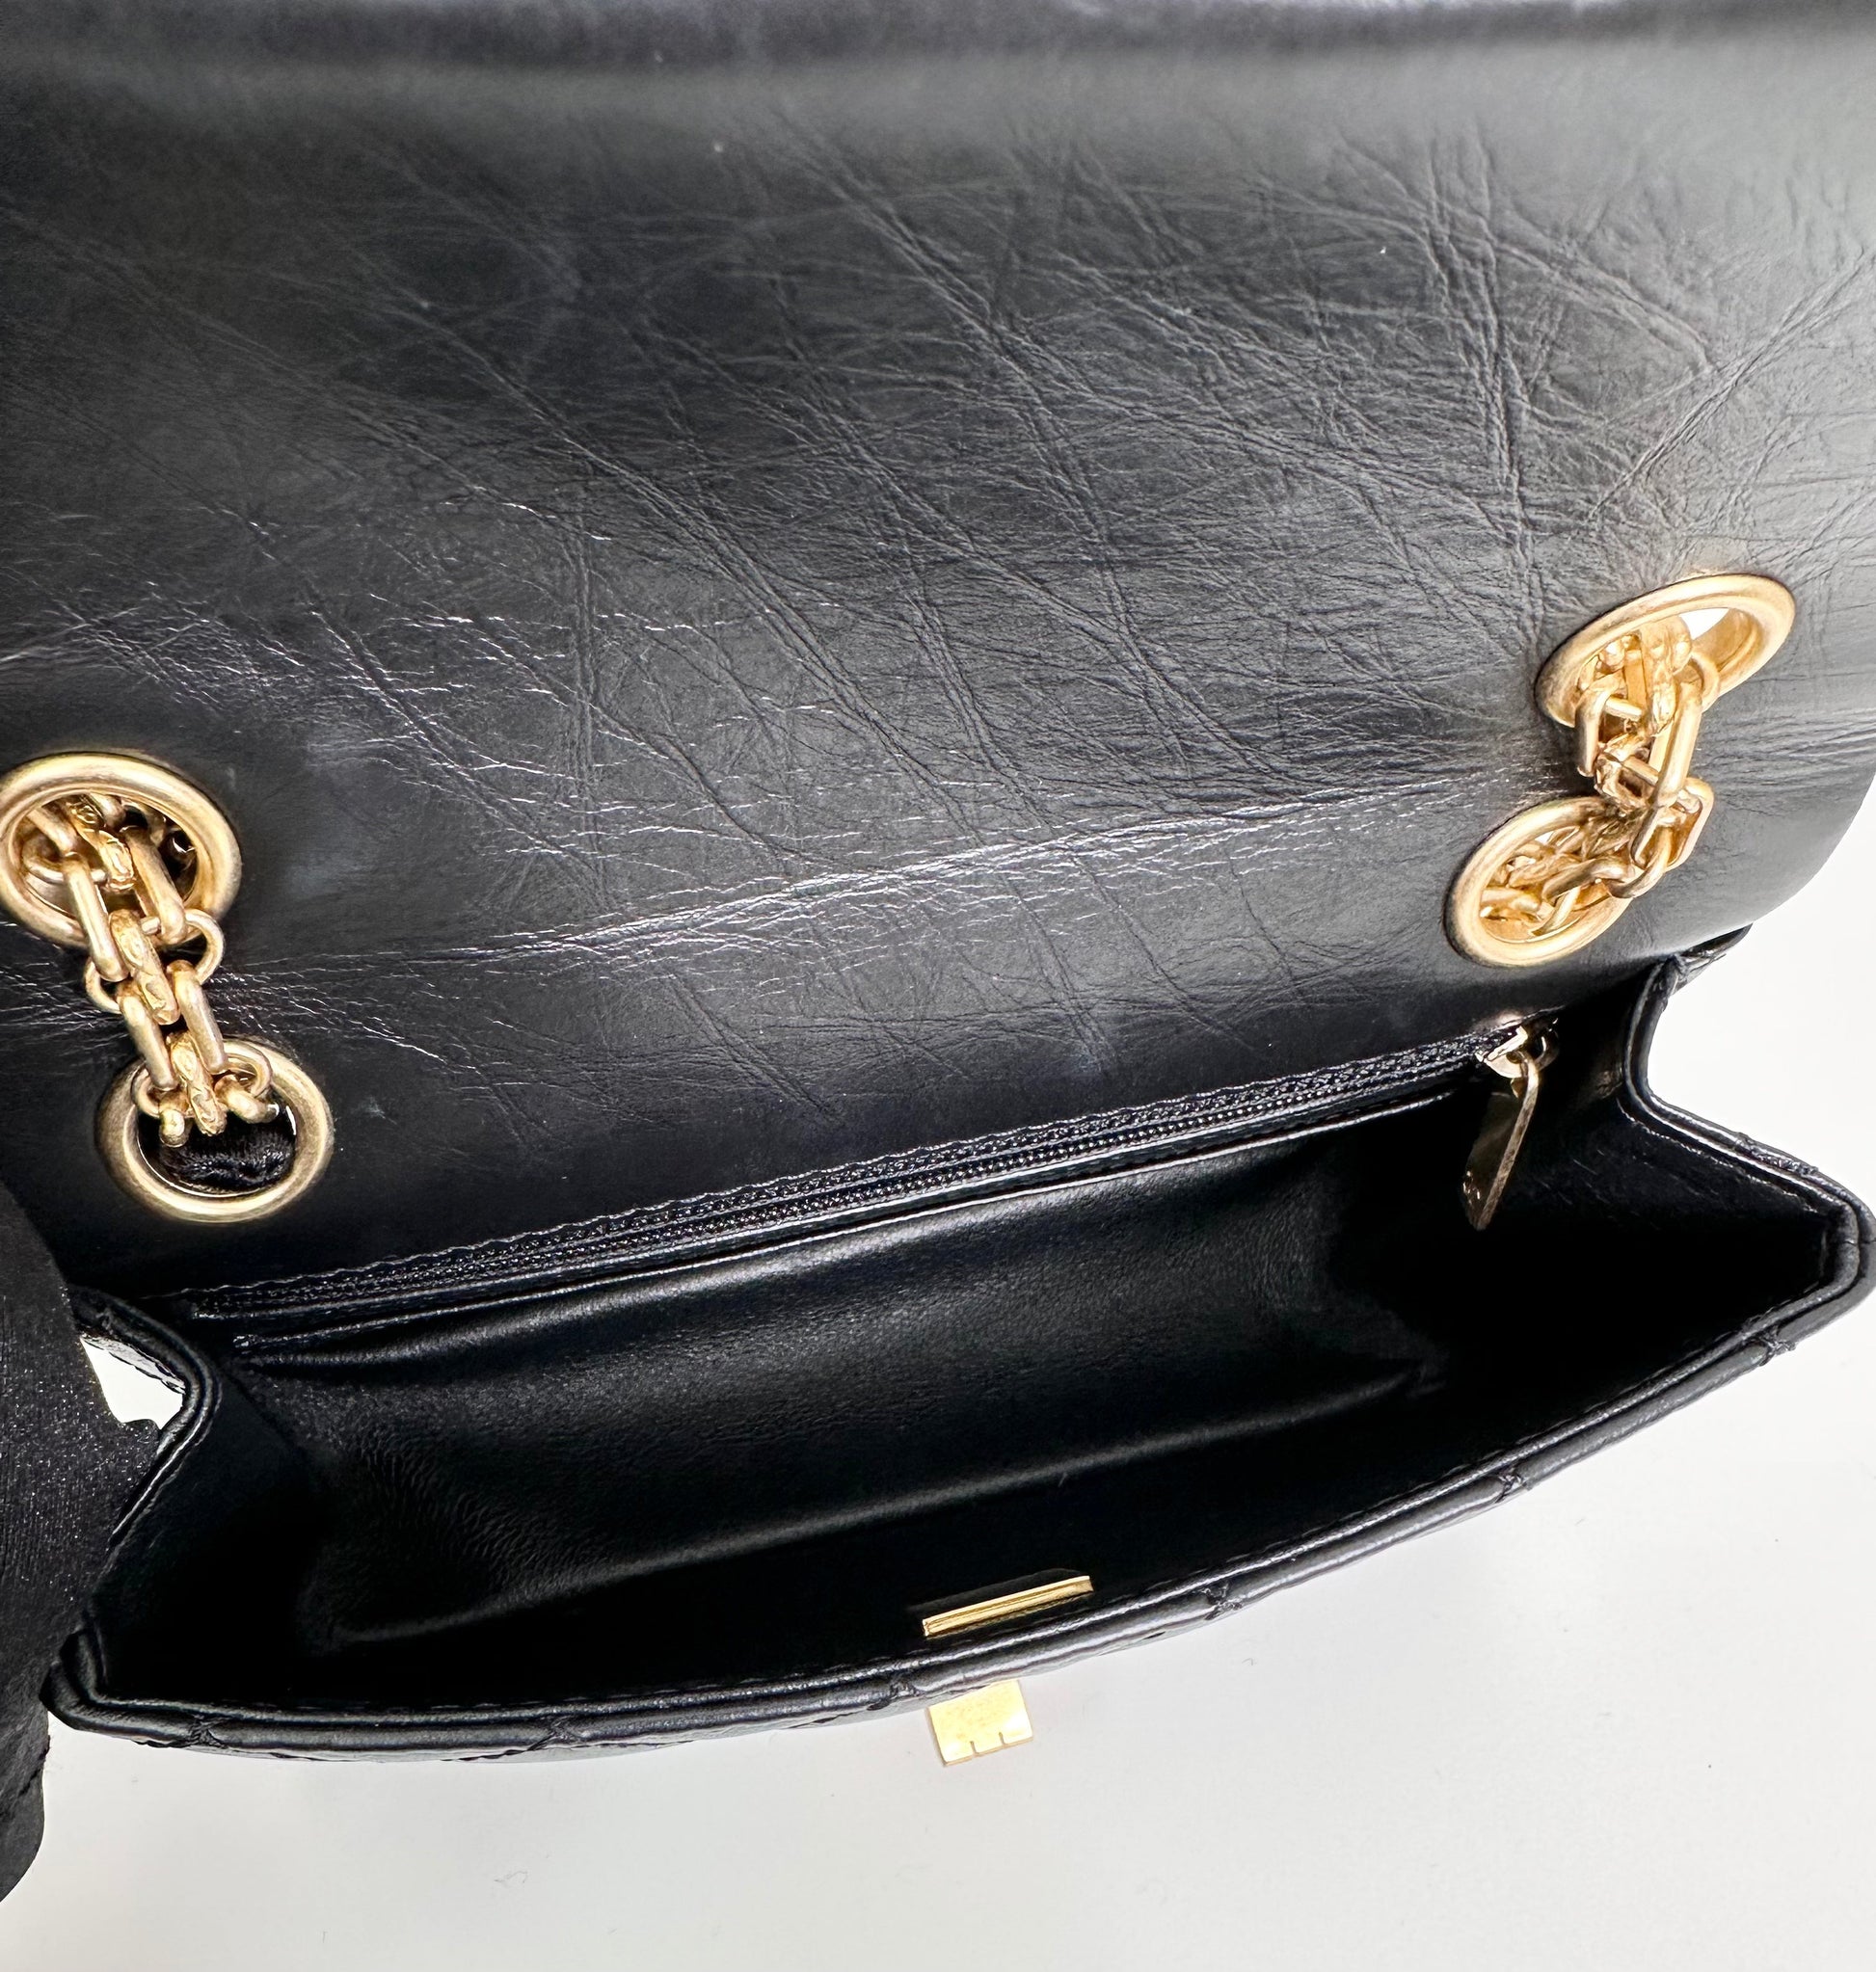 Discontinued Bag #2 Chanel Mini 2.55 Classic Flap Bag